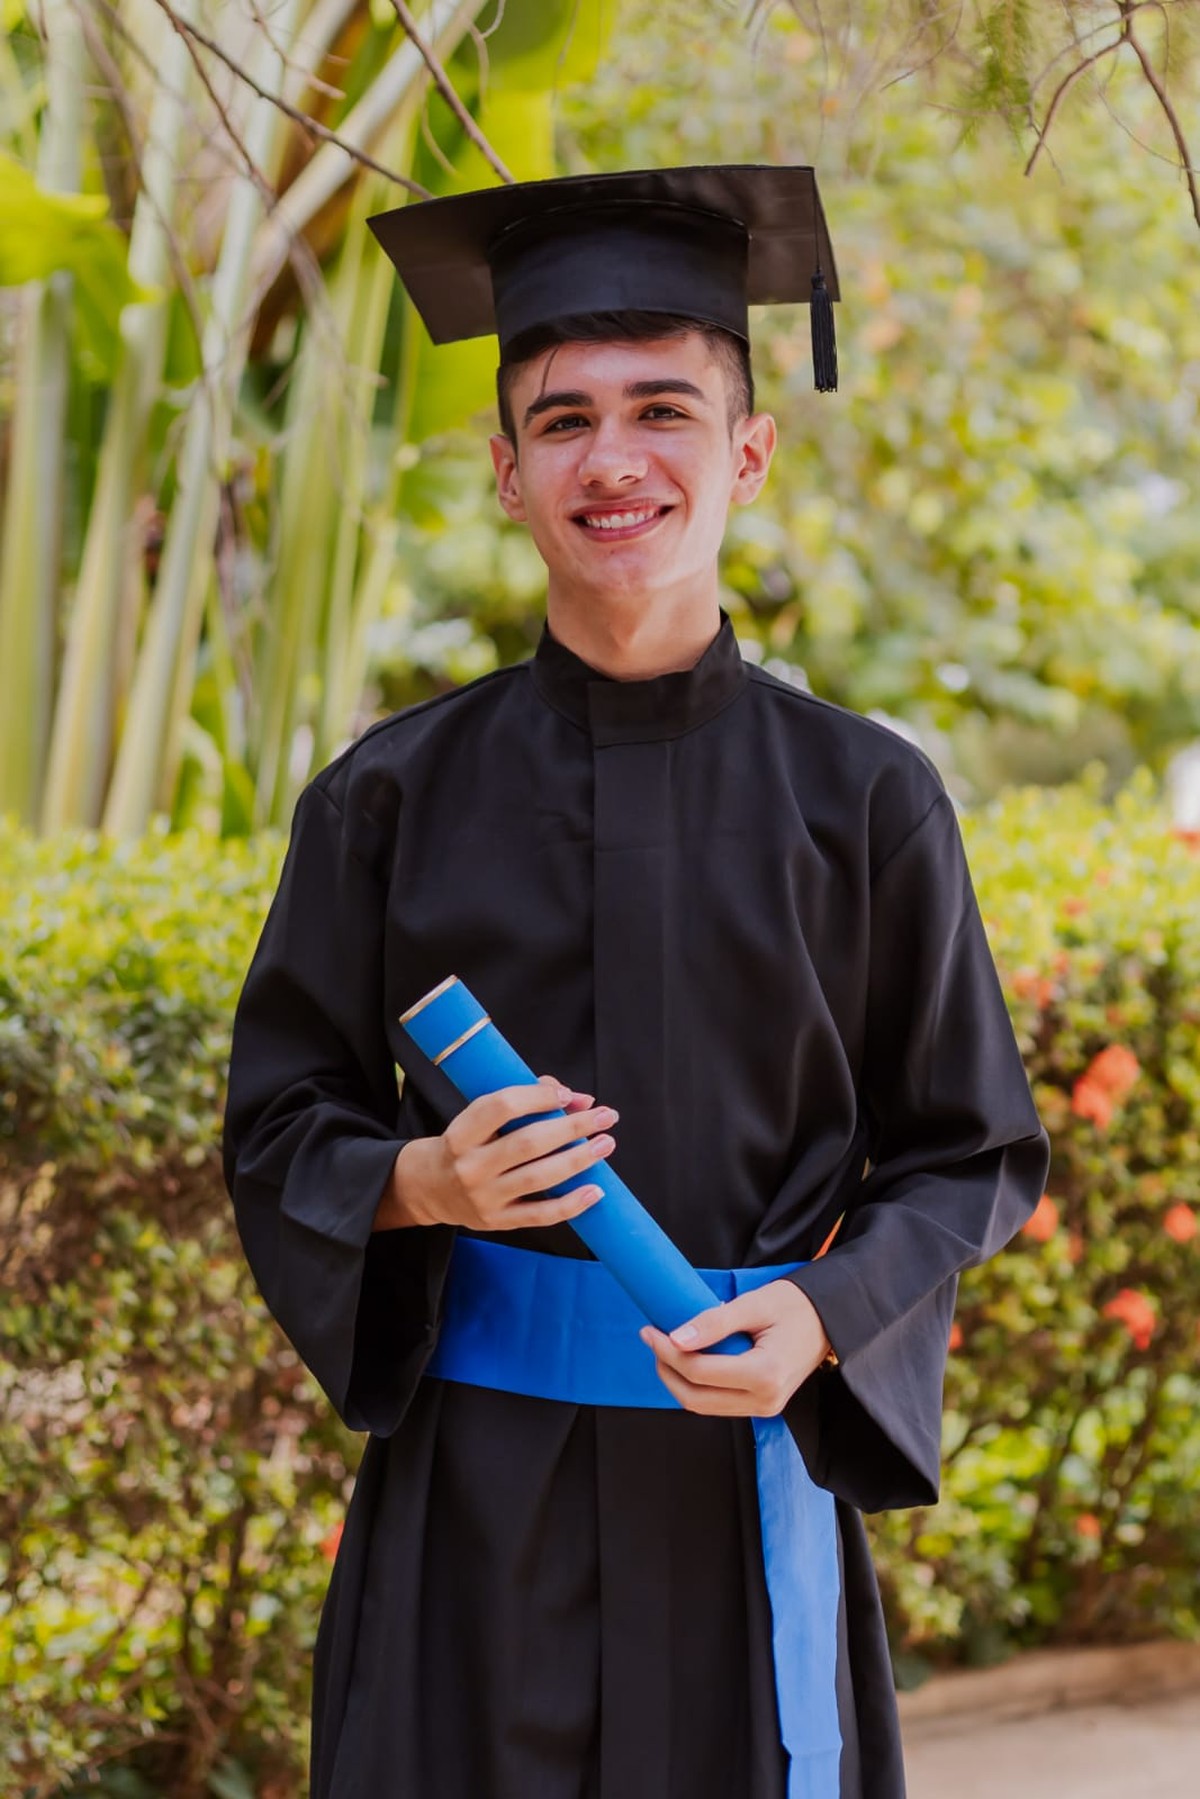 Estudiante del Sertão da PB gana beca para universidad en España: ‘Oportunidad de crecimiento’ |  பரைபா